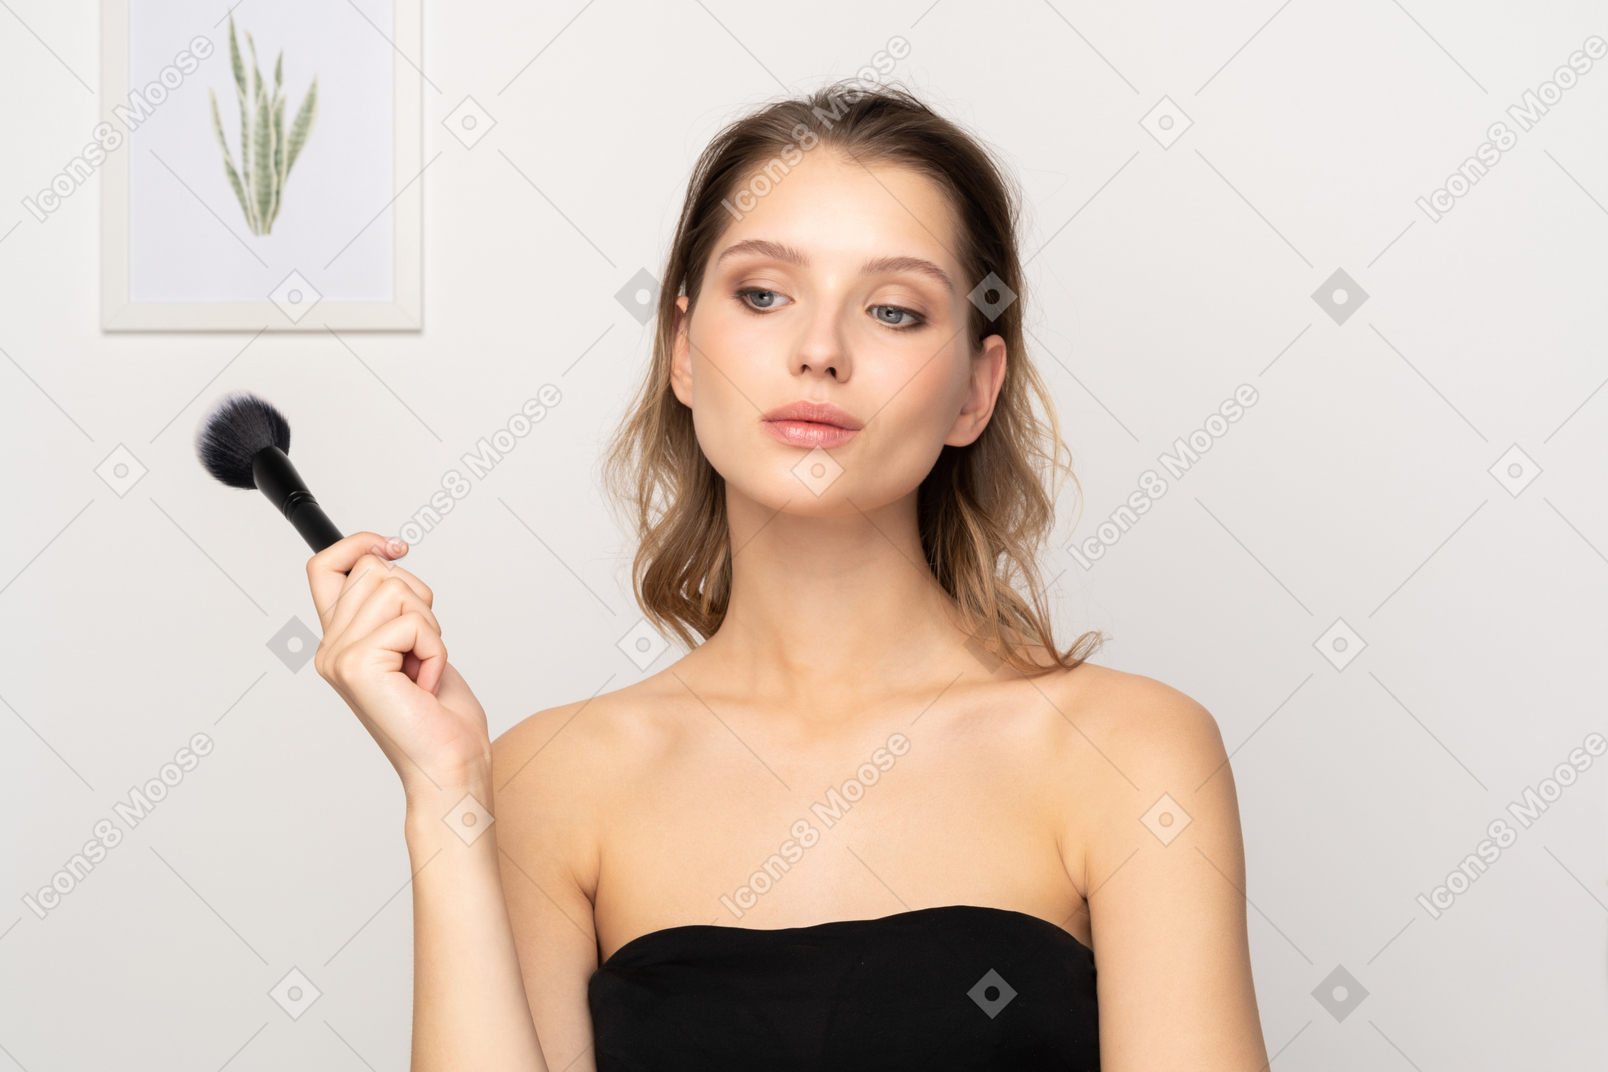 Vista frontal de uma jovem pensativa e sensual segurando um pincel de maquiagem